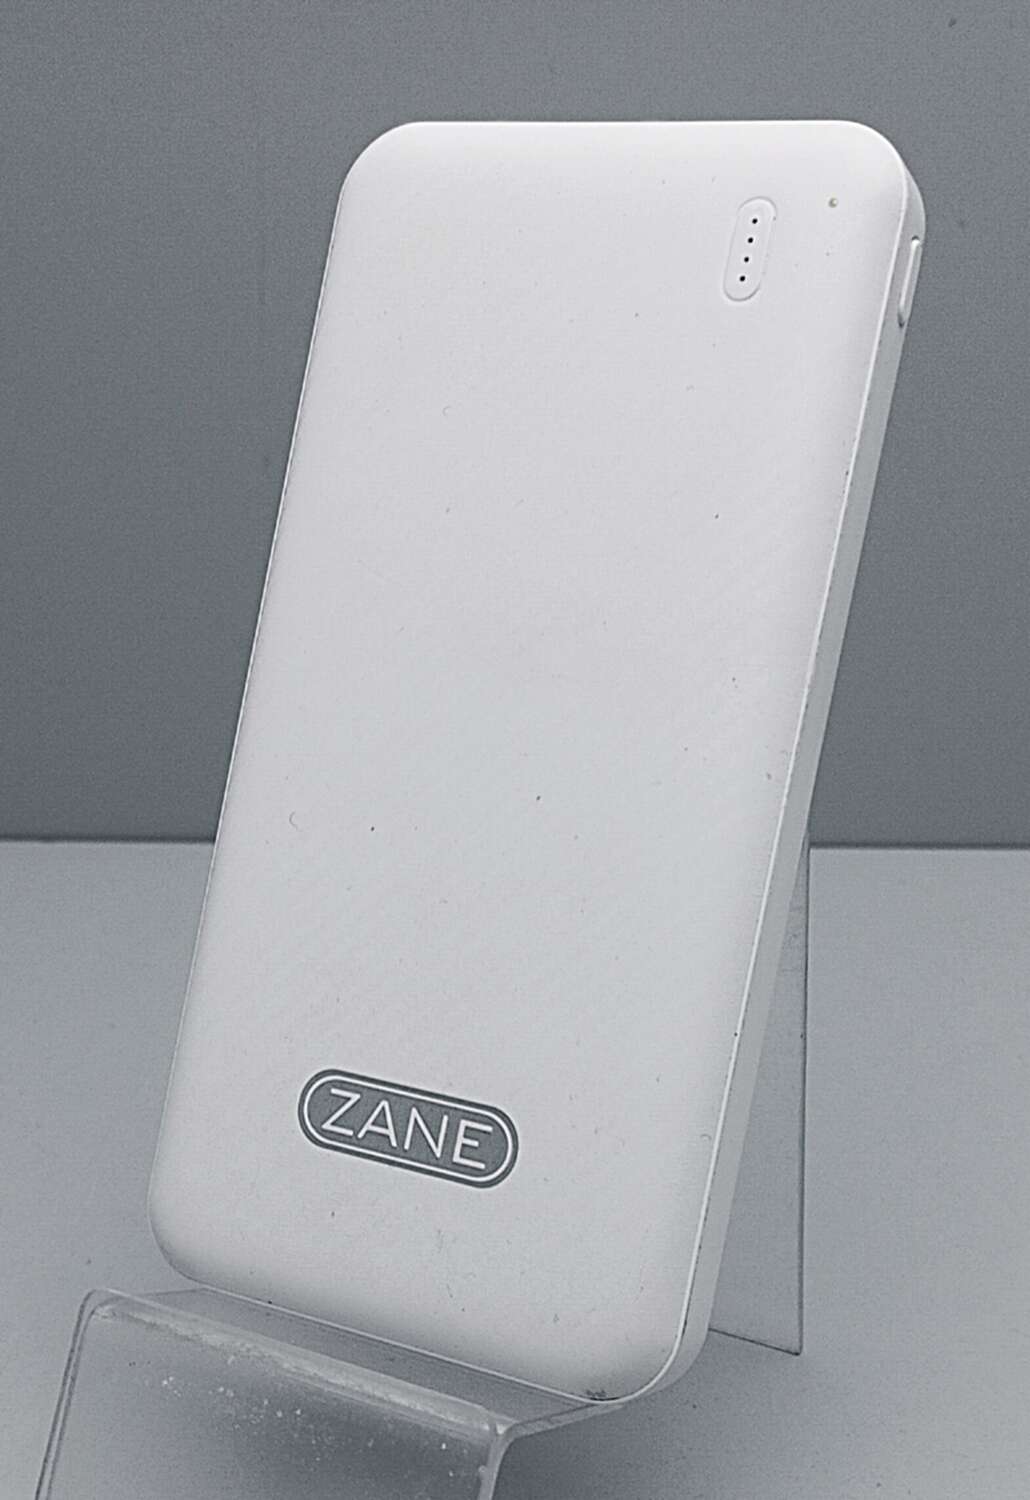 Powerbank Zane S-010 10000 mAh White 6